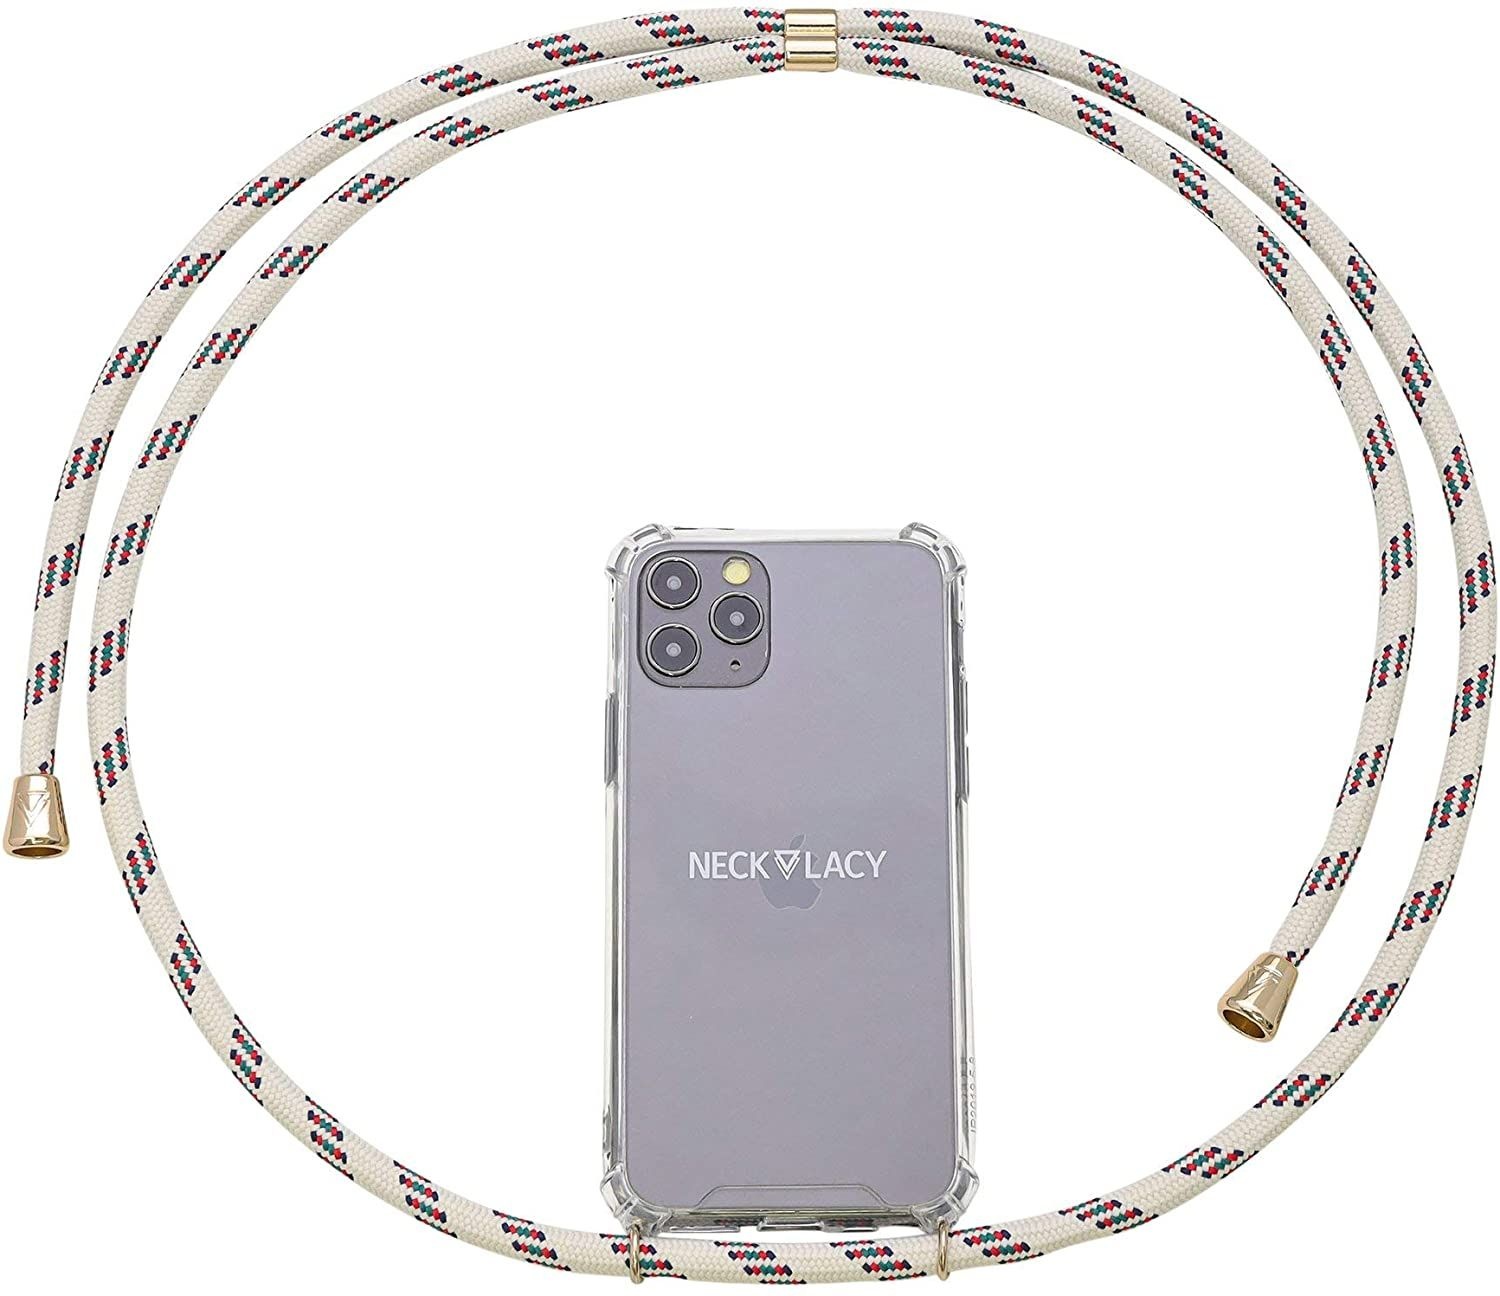 NECKLACY Handykette Handyhülle zum umhängen - für iPhone X/XS - Case / Handyhülle mit Band zum umhängen - Trageband Hals mit Kordel - Smartphone Necklace, Classic Birch